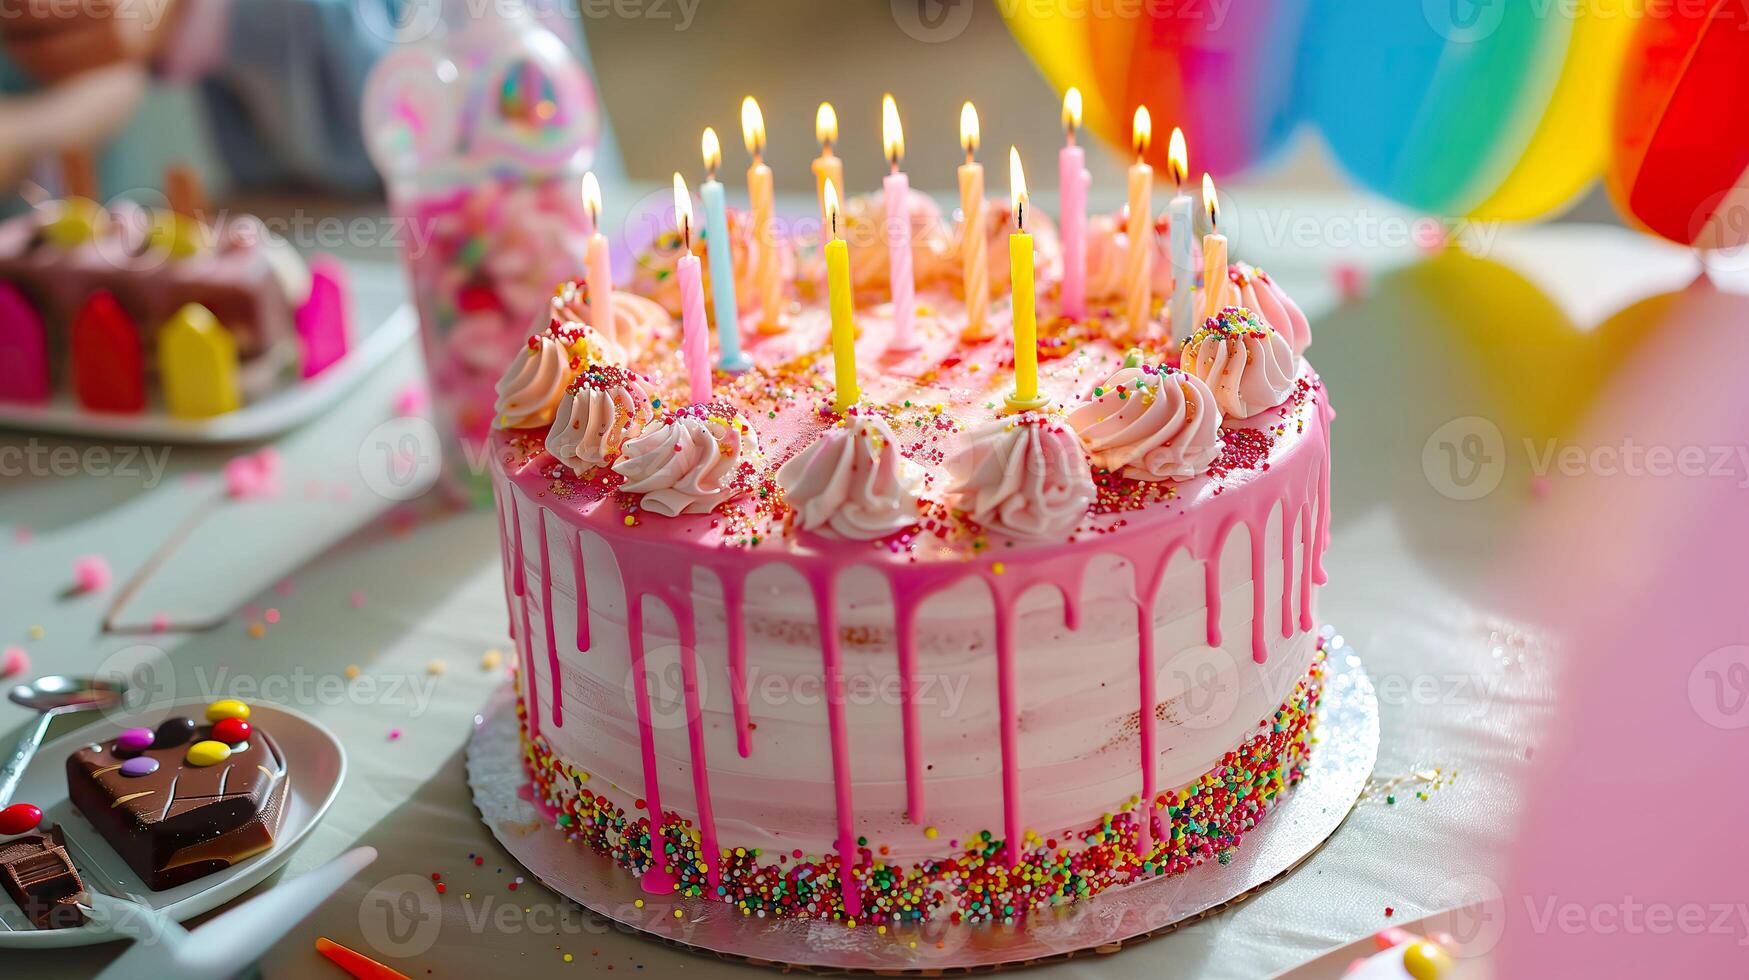 ai genererad ljuv firande glädje, vibrerande rosa födelsedag kaka för barn foto